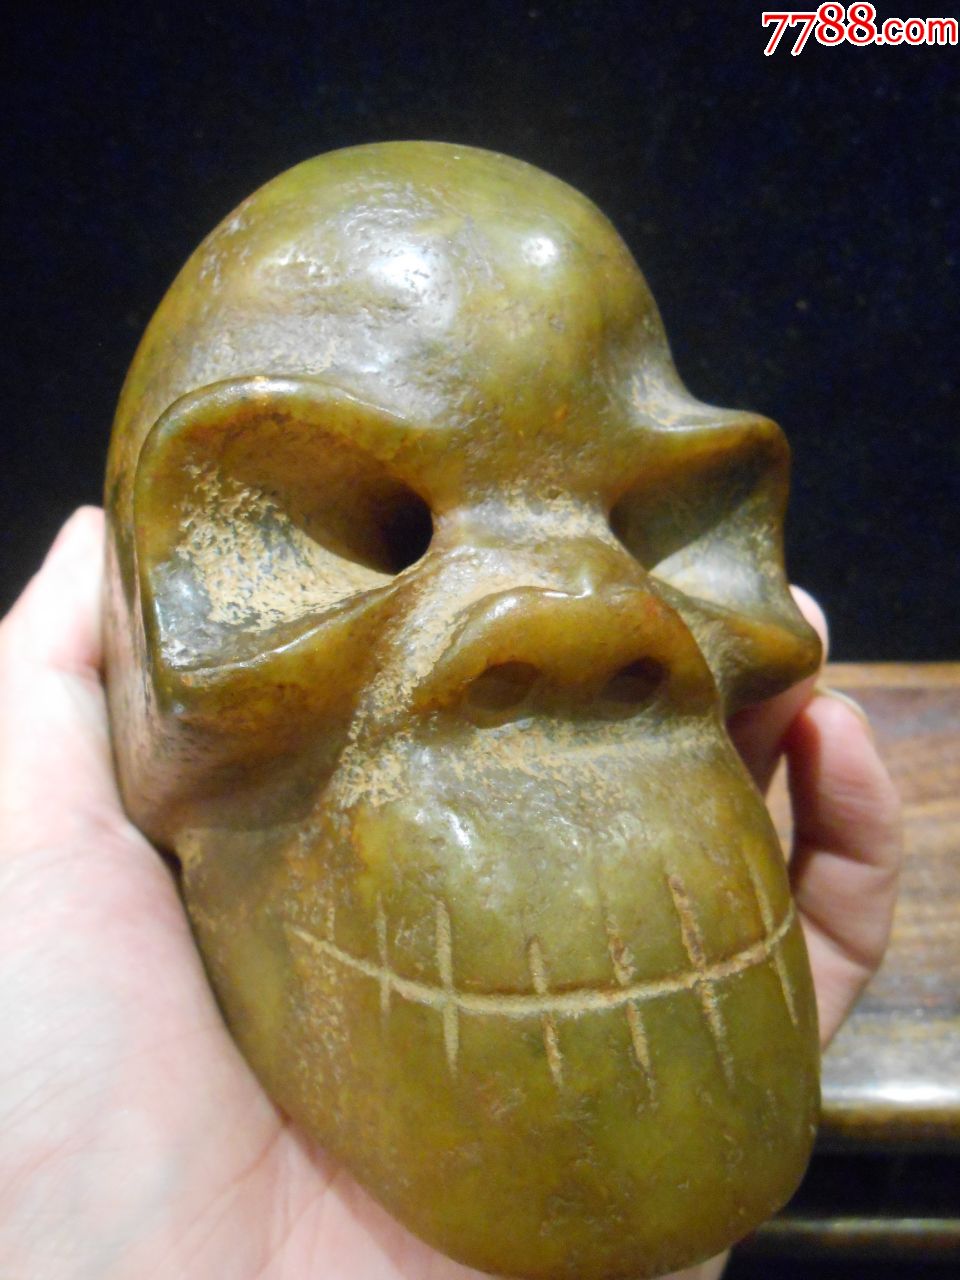 红山玉骷髅头雕件,雕刻骷髅头,玉质油润,包浆老气,重3斤多,无托,底价